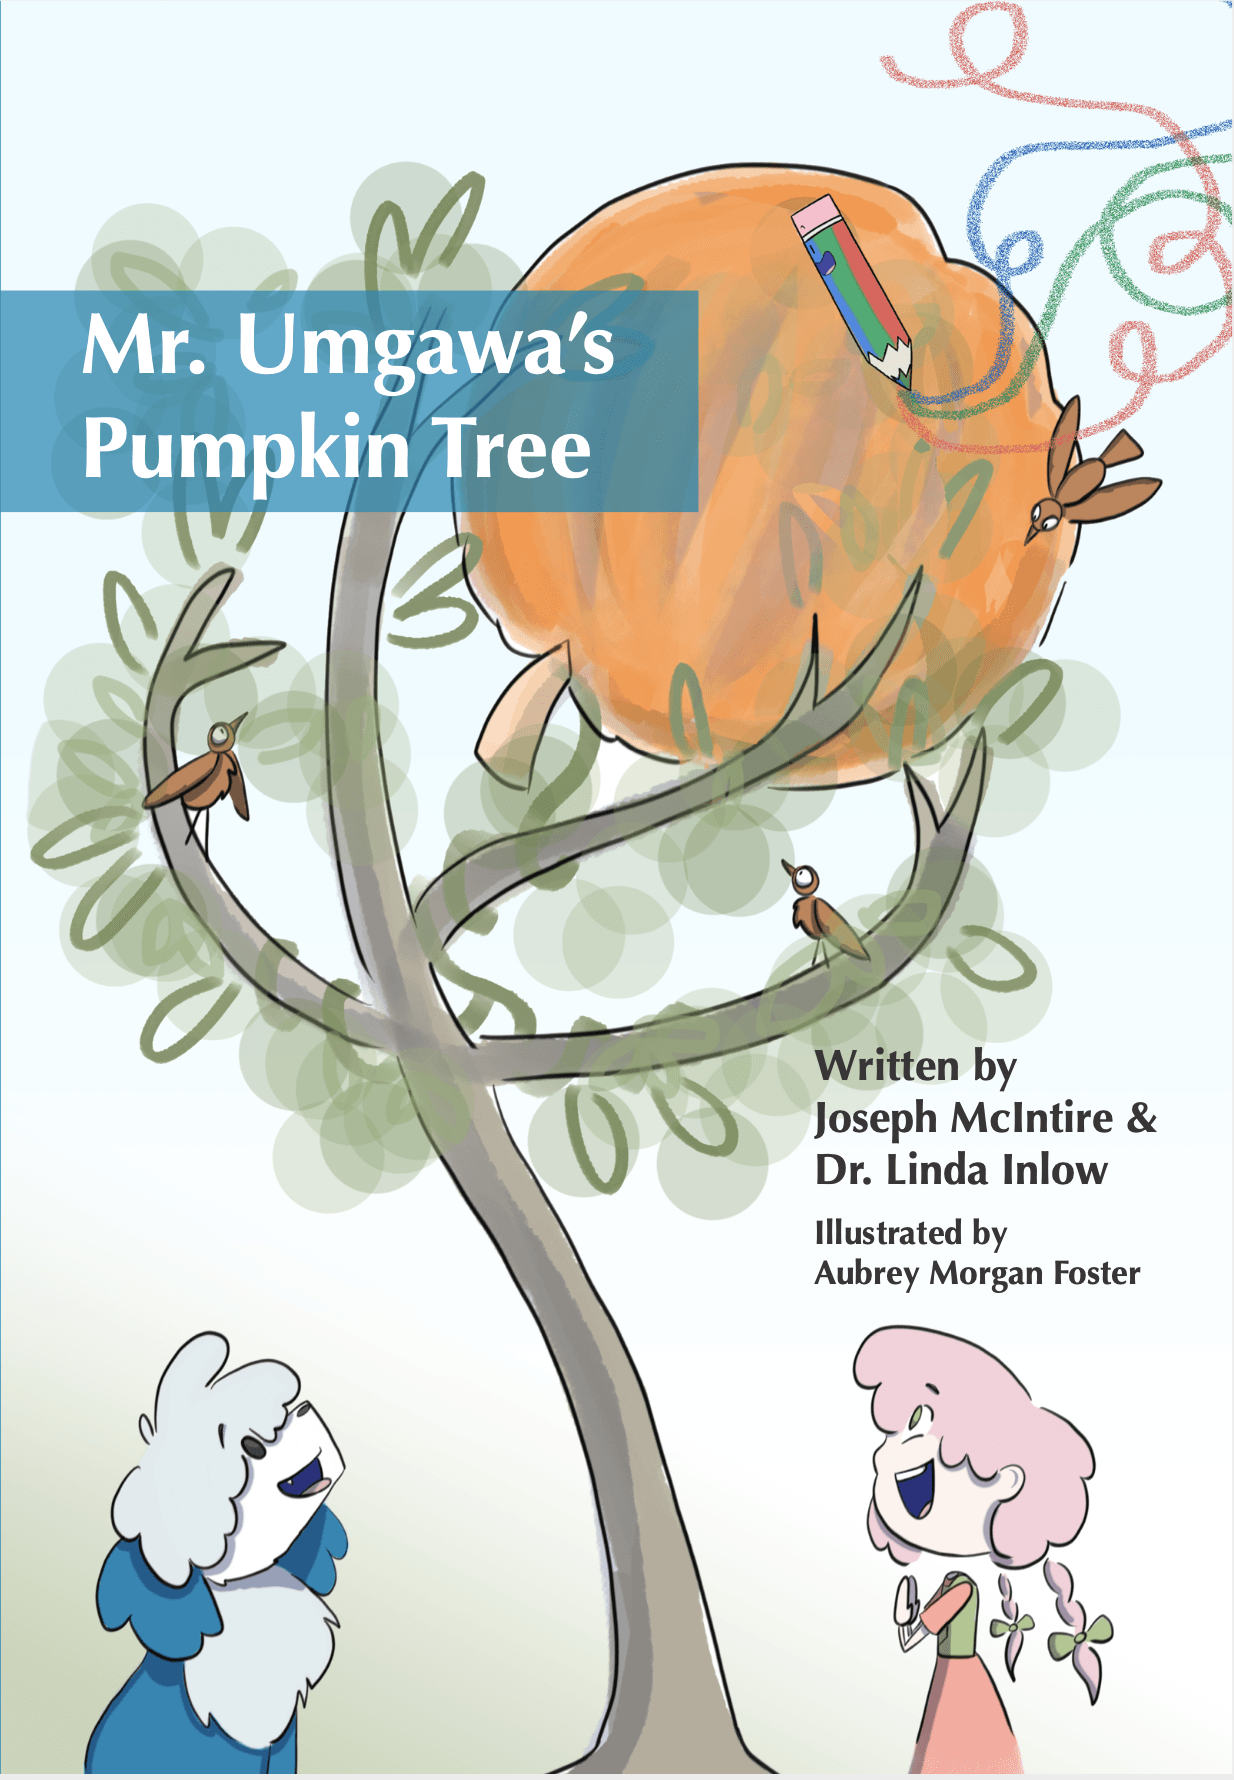 Mr. Umgawa's Pumpkin Tree